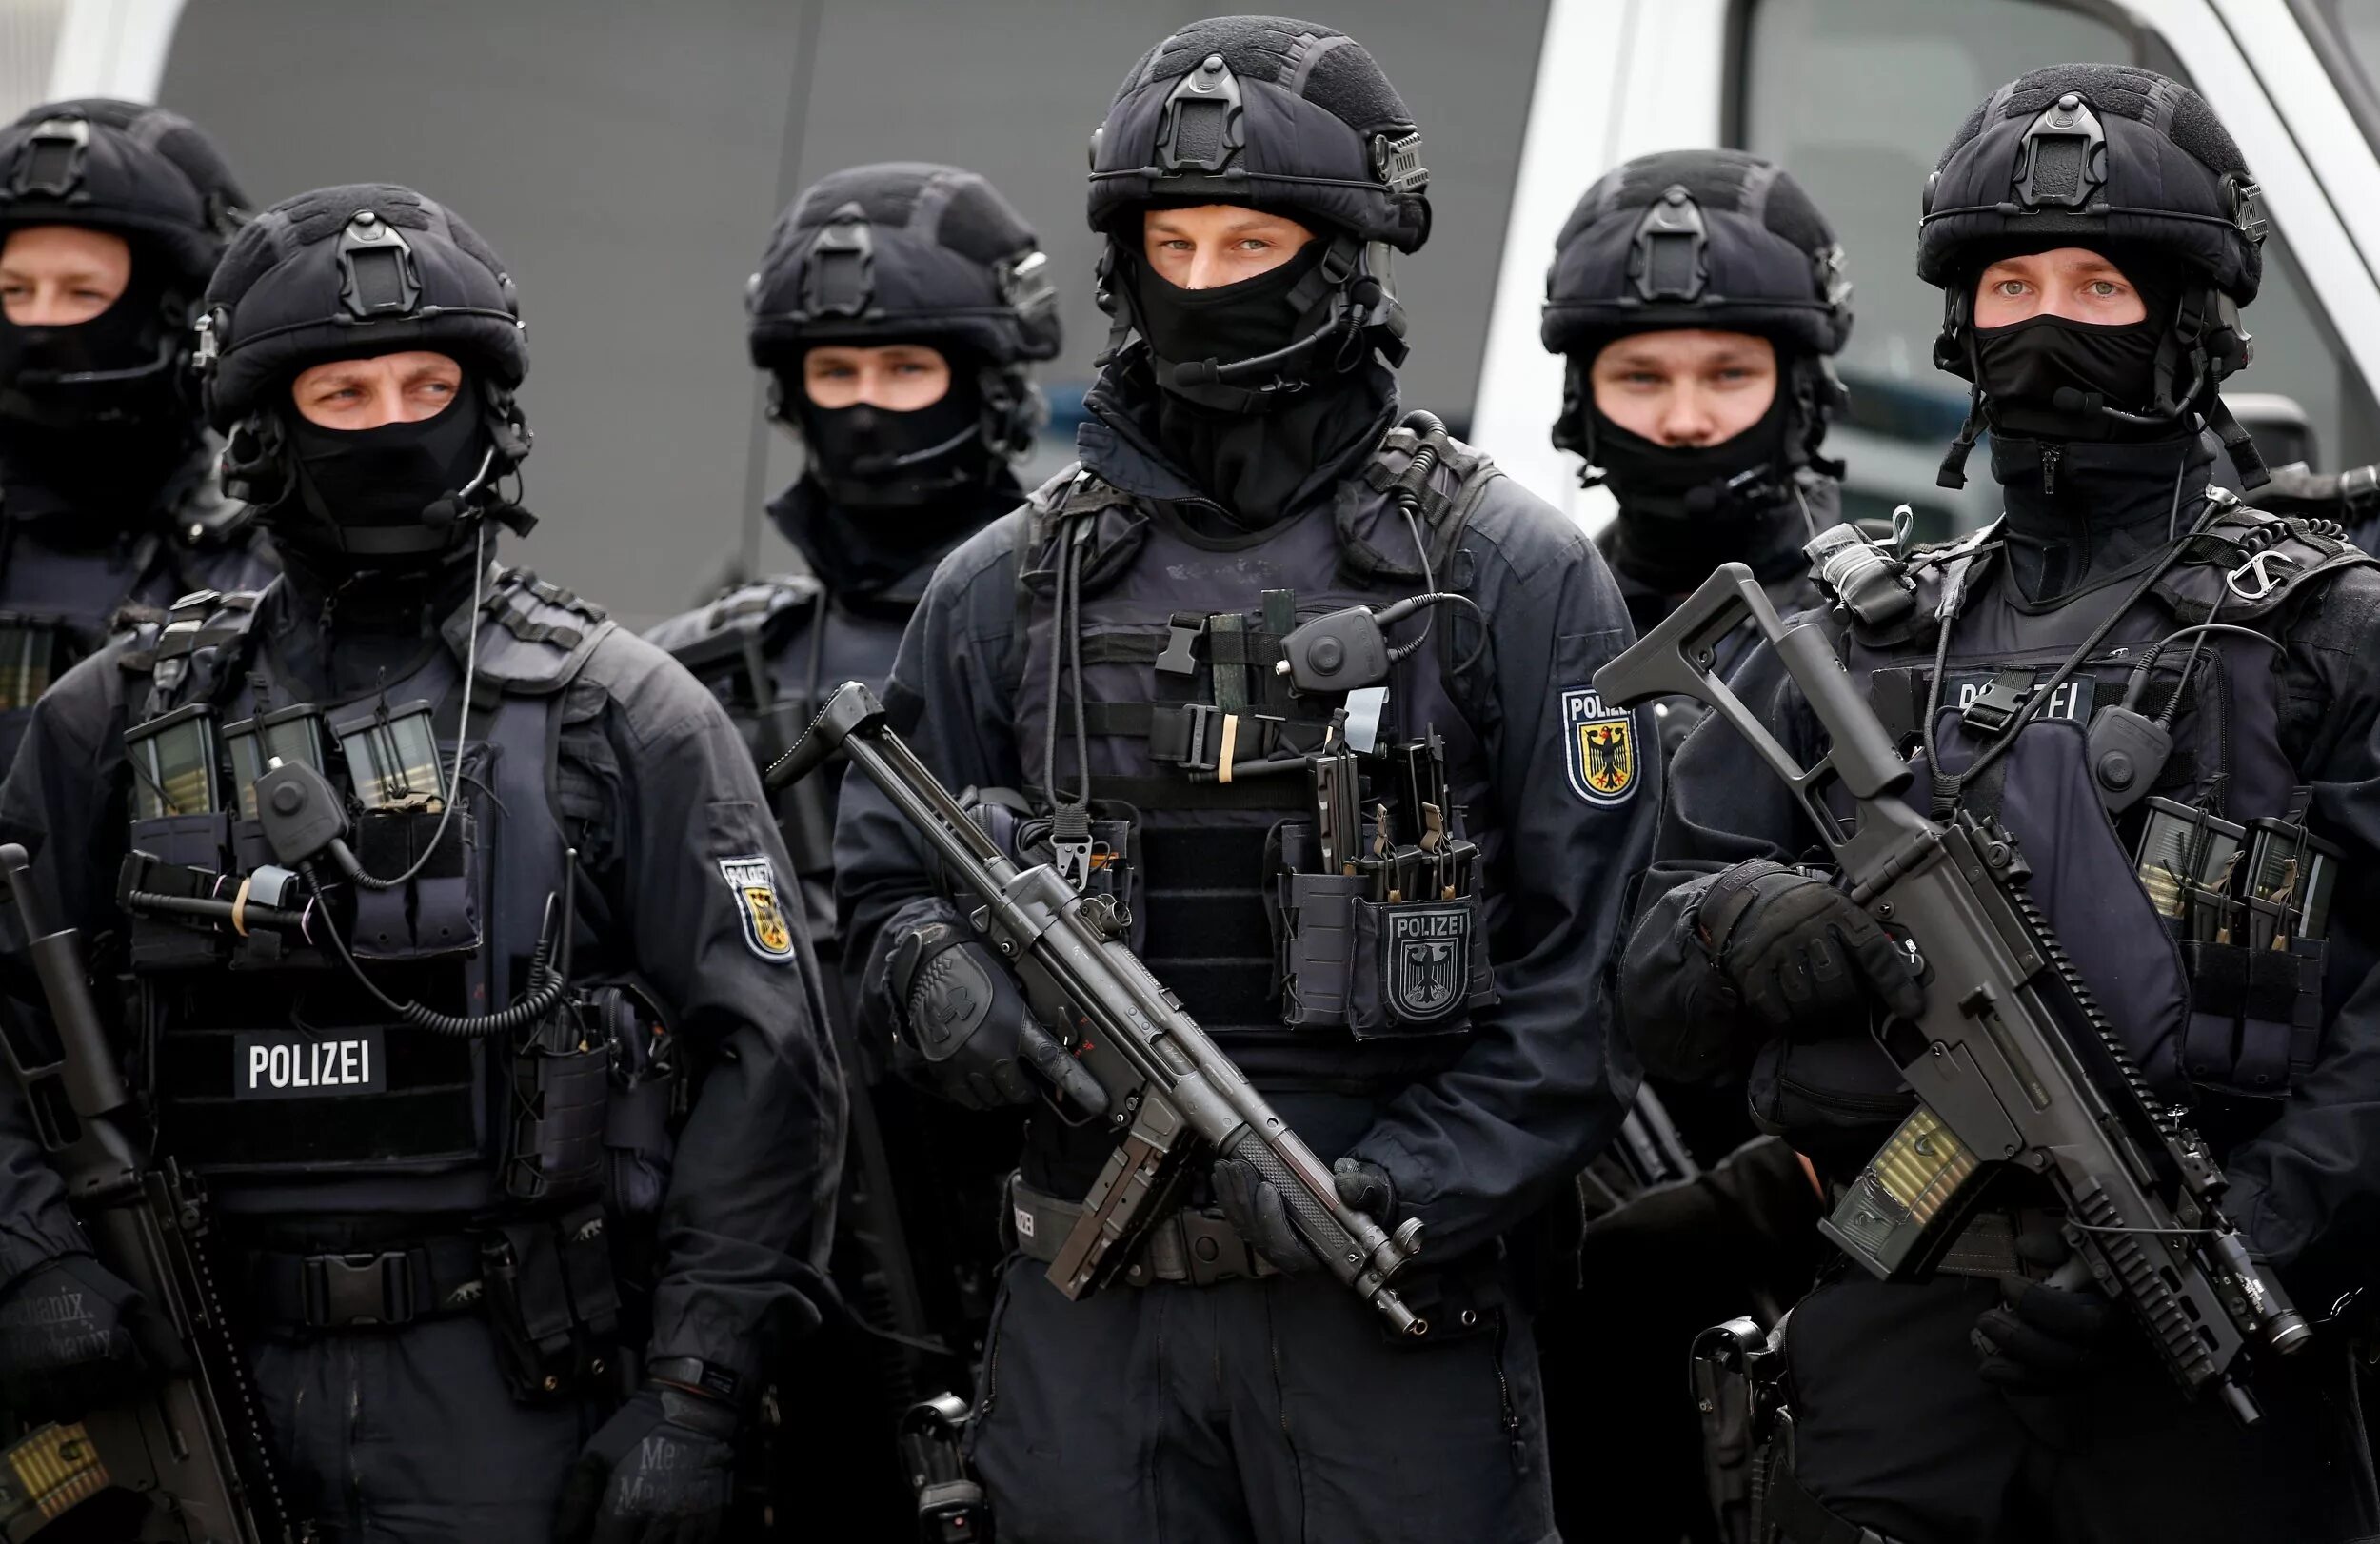 Спецназ в англии 9 букв. Спецназ GSG 9. Немецкий спецназ GSG 9. GSG 9 экипировка Polizei. Gsg9 униформа.